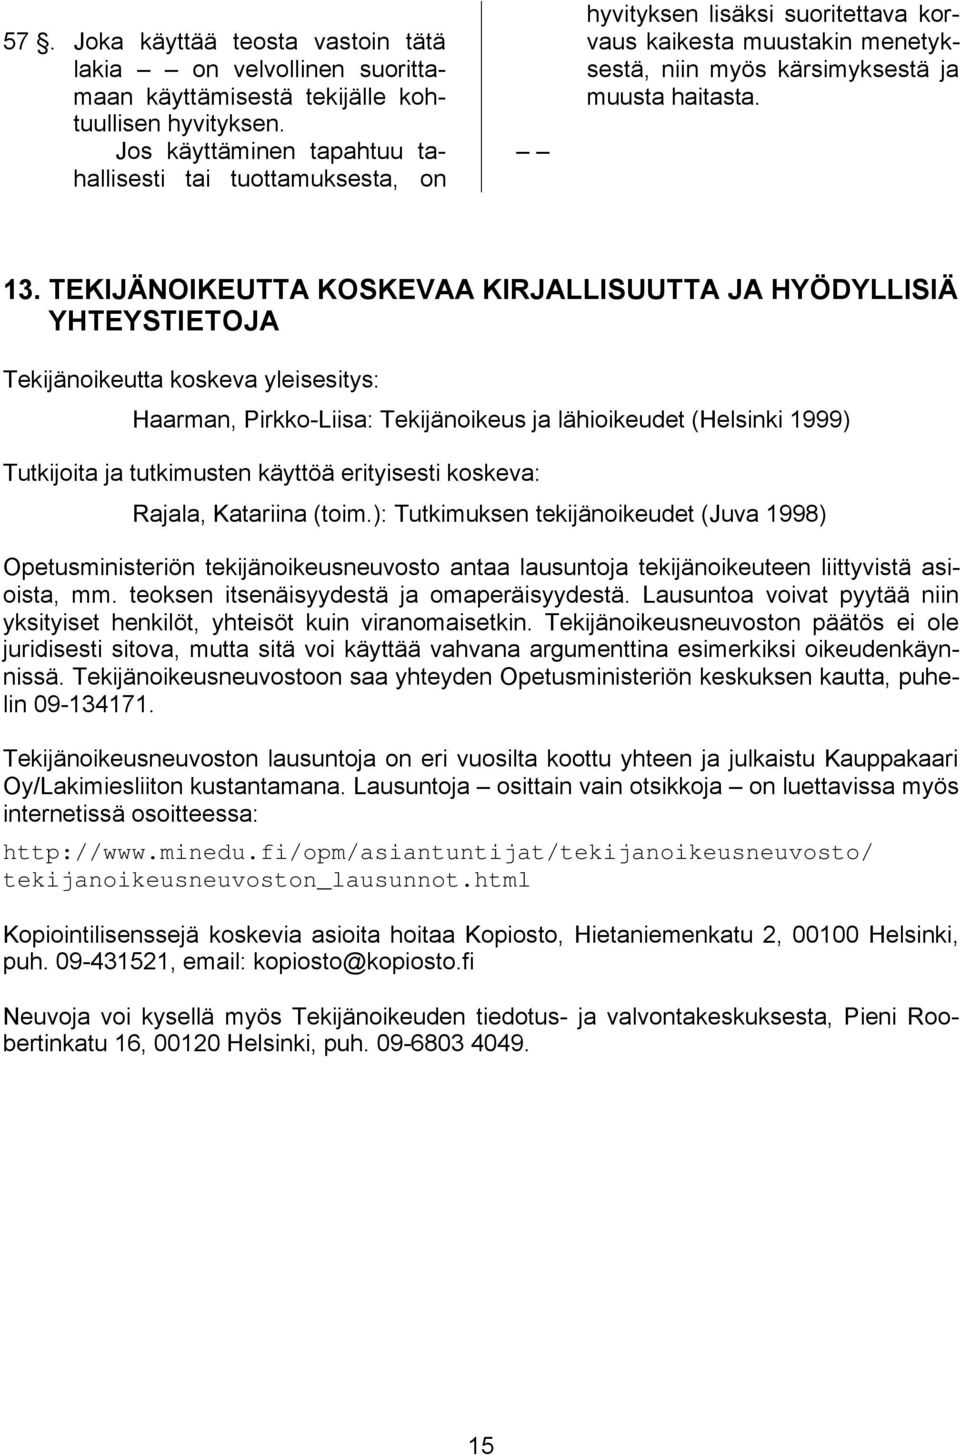 TEKIJÄNOIKEUTTA KOSKEVAA KIRJALLISUUTTA JA HYÖDYLLISIÄ YHTEYSTIETOJA Tekijänoikeutta koskeva yleisesitys: Haarman, Pirkko-Liisa: Tekijänoikeus ja lähioikeudet (Helsinki 1999) Tutkijoita ja